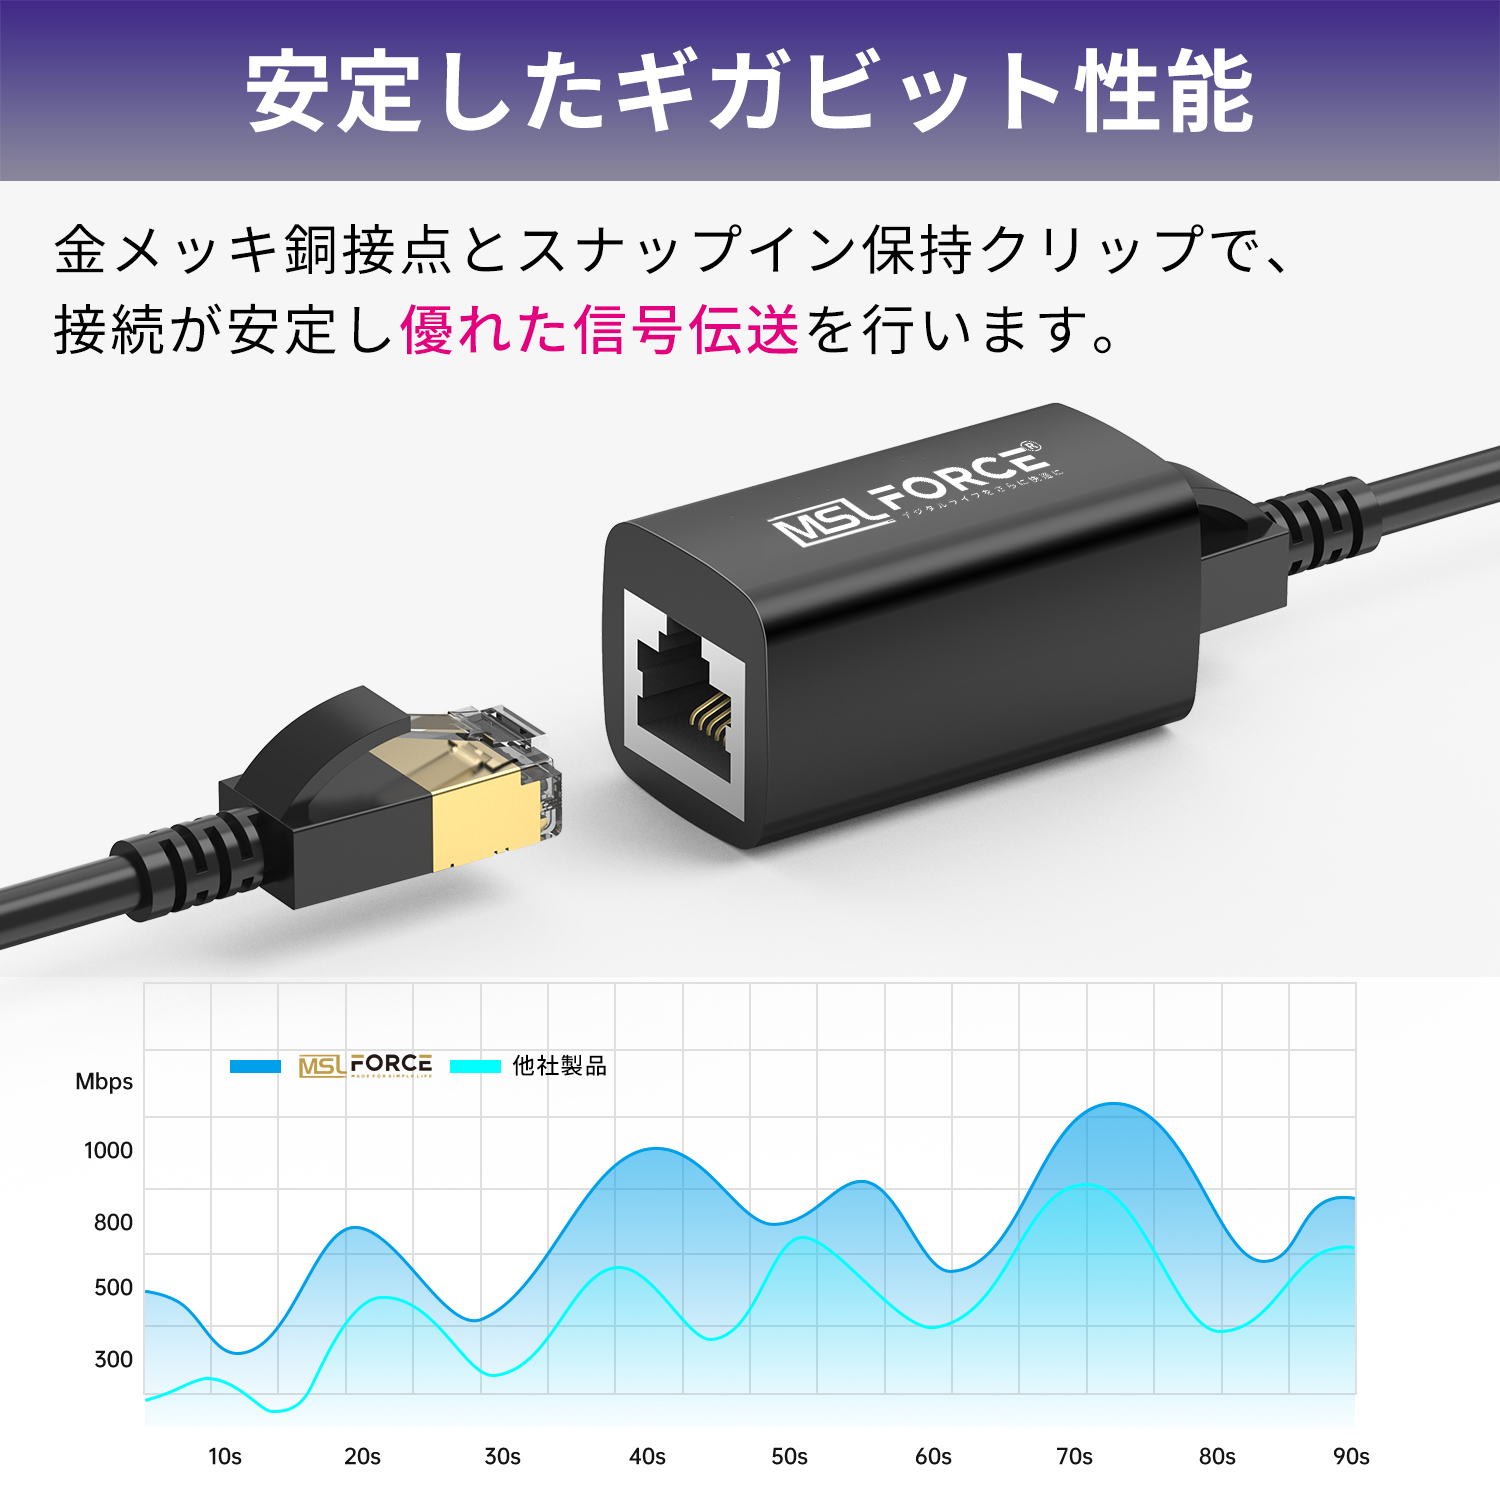  сегодня максимальный 600 иен скидка удлинение для LAN кабель коннектор LAN удлинение 10Gbps Cat8 Cat7 Cat6 1000Mbps 100m большое растояние i-sa сеть коннектор rj45e бесплатная доставка (39%)